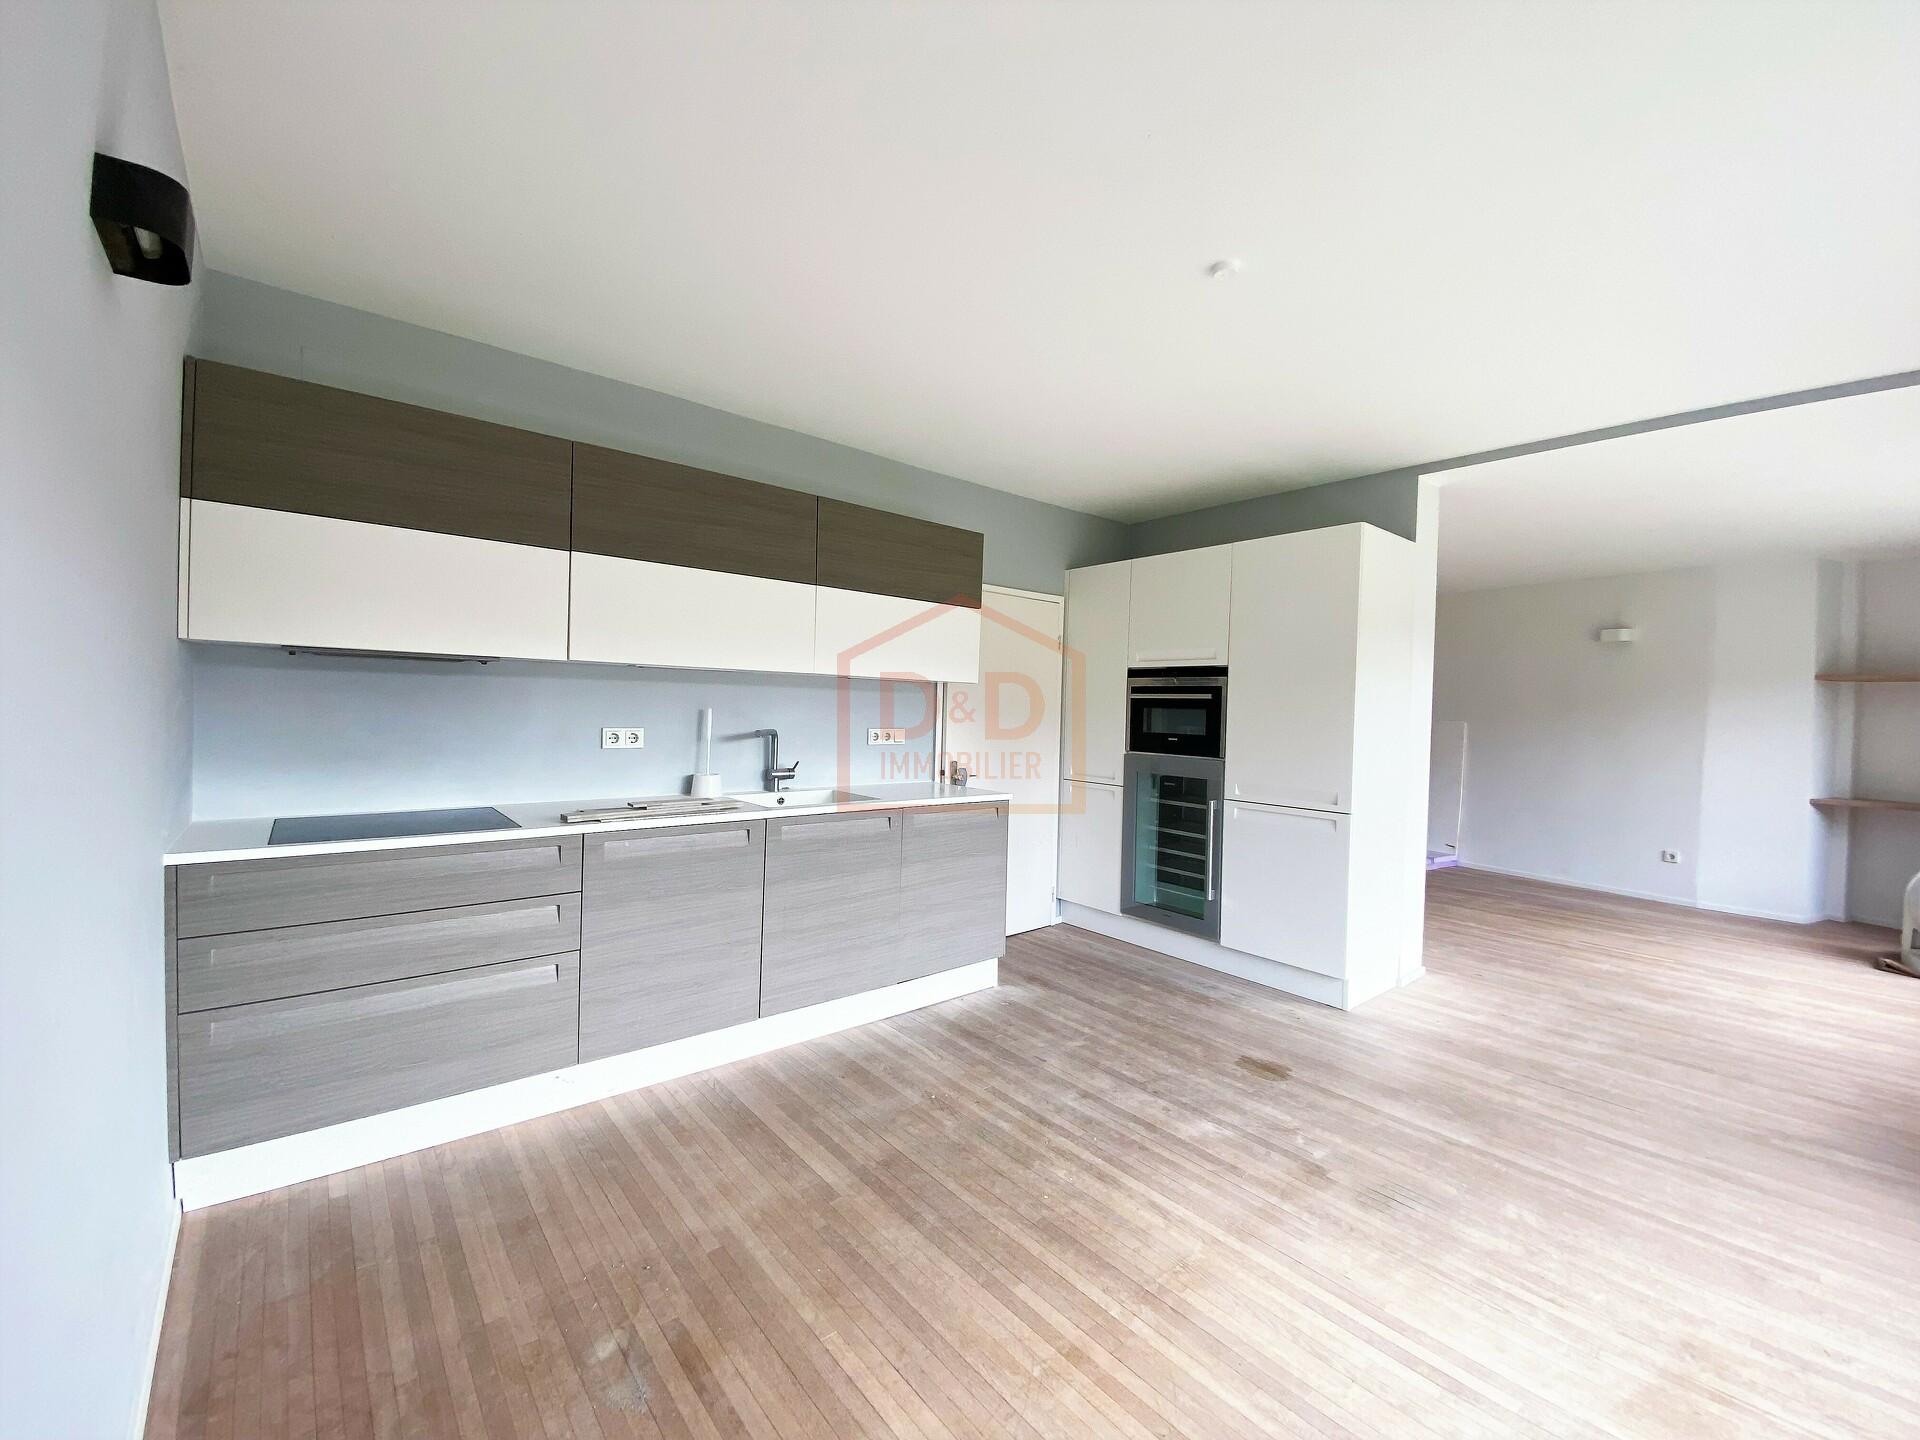 Appartement à Bridel, 85 m², 2 chambres, 1 salle de bain, 1 garage, 2 000 €/mois